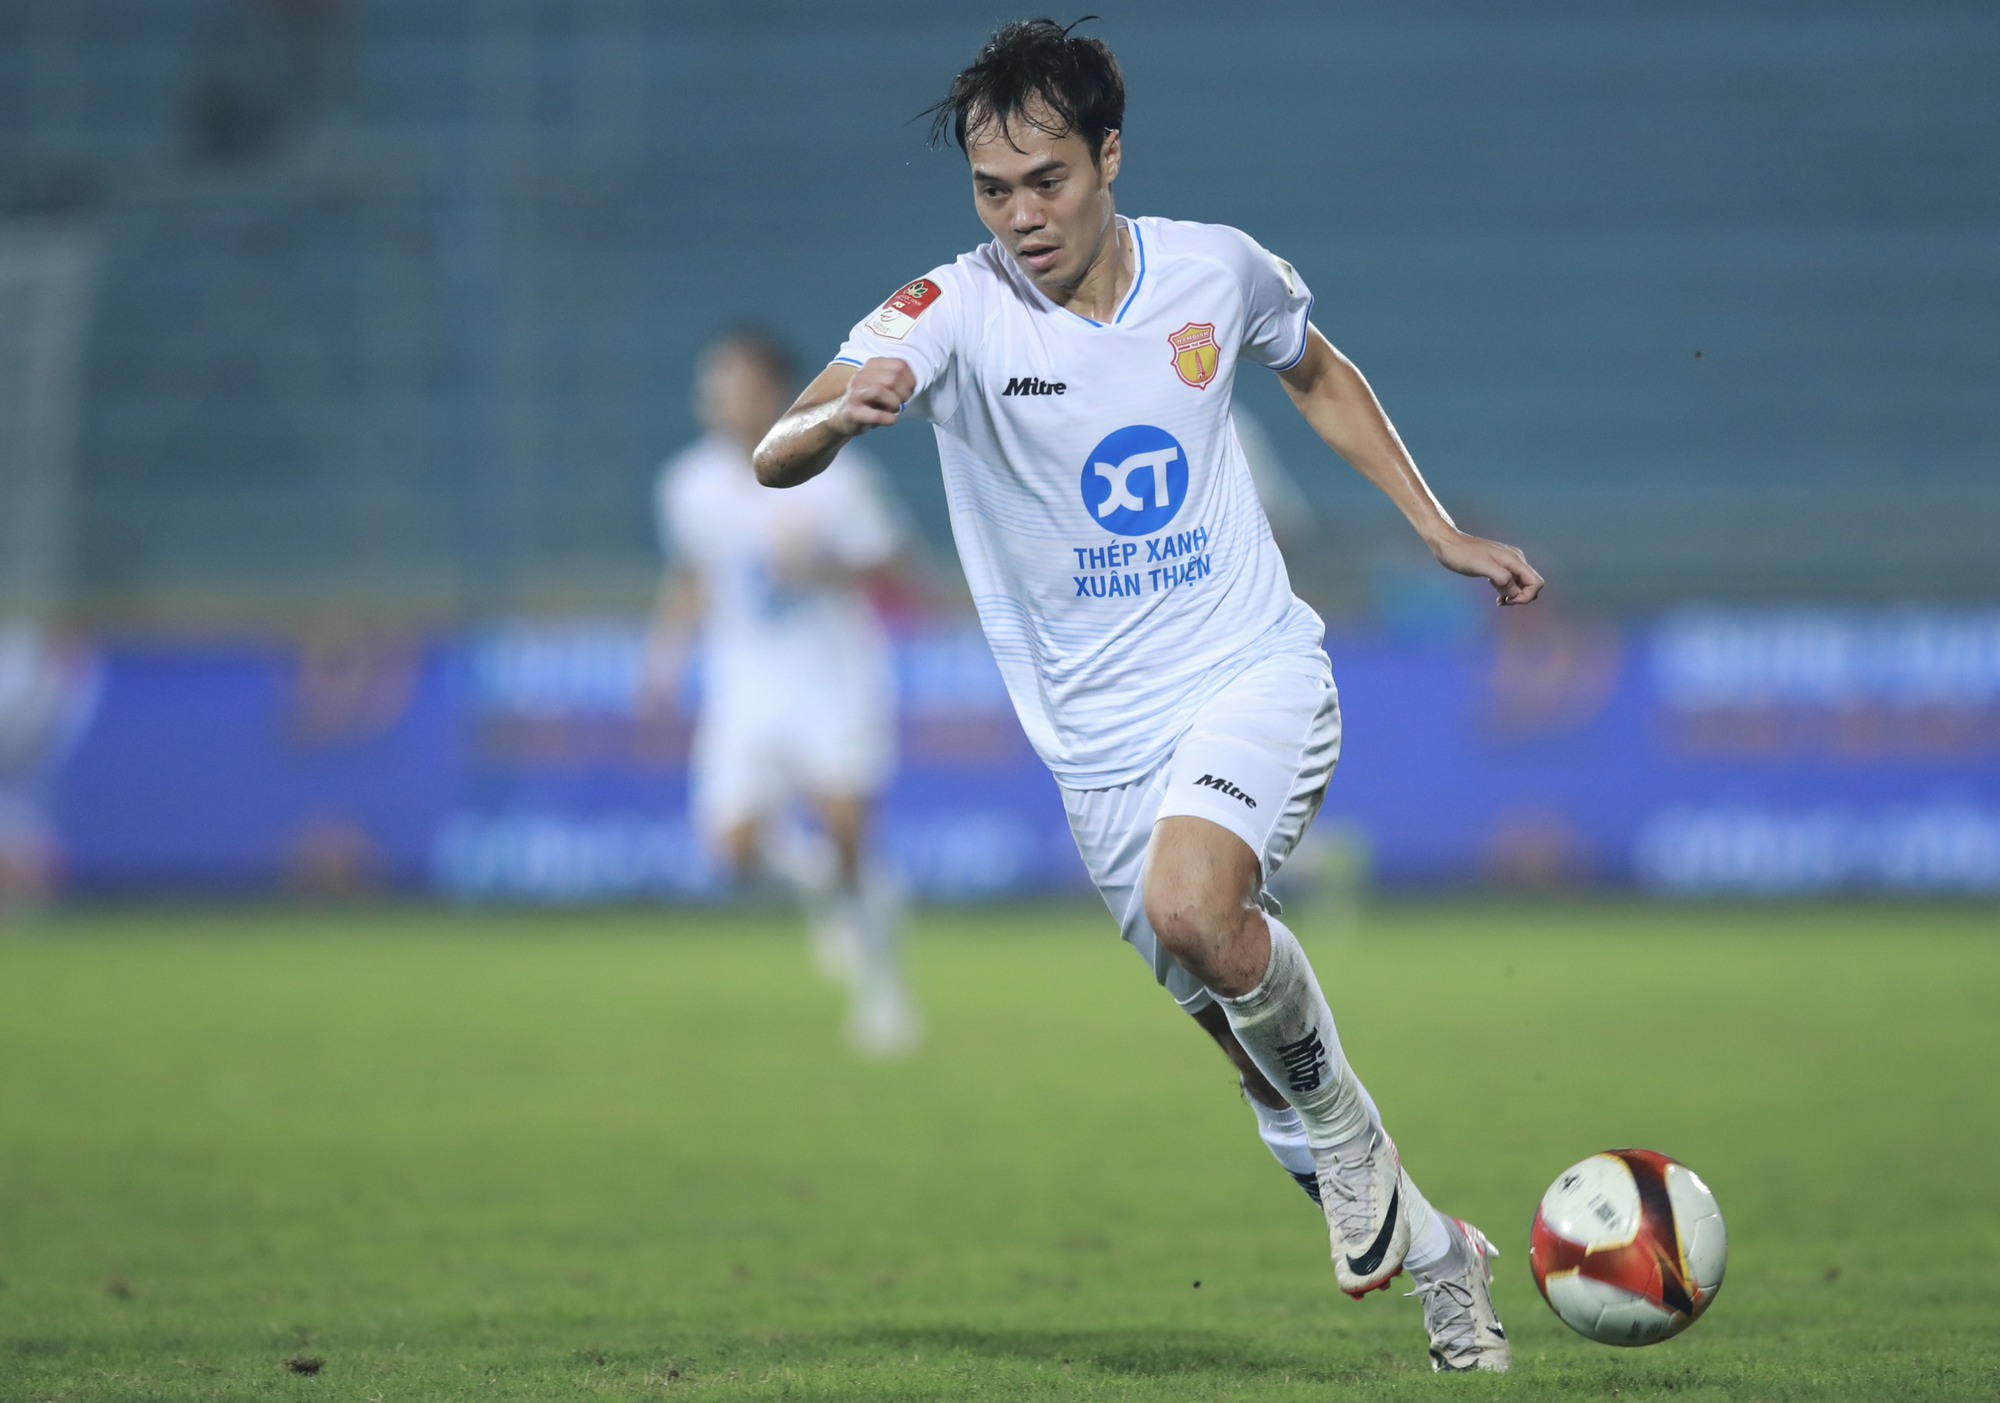 HLV Lê Huỳnh Đức trước cơ hội trở thành 'người mở đường' ở V-League - Ảnh 3.